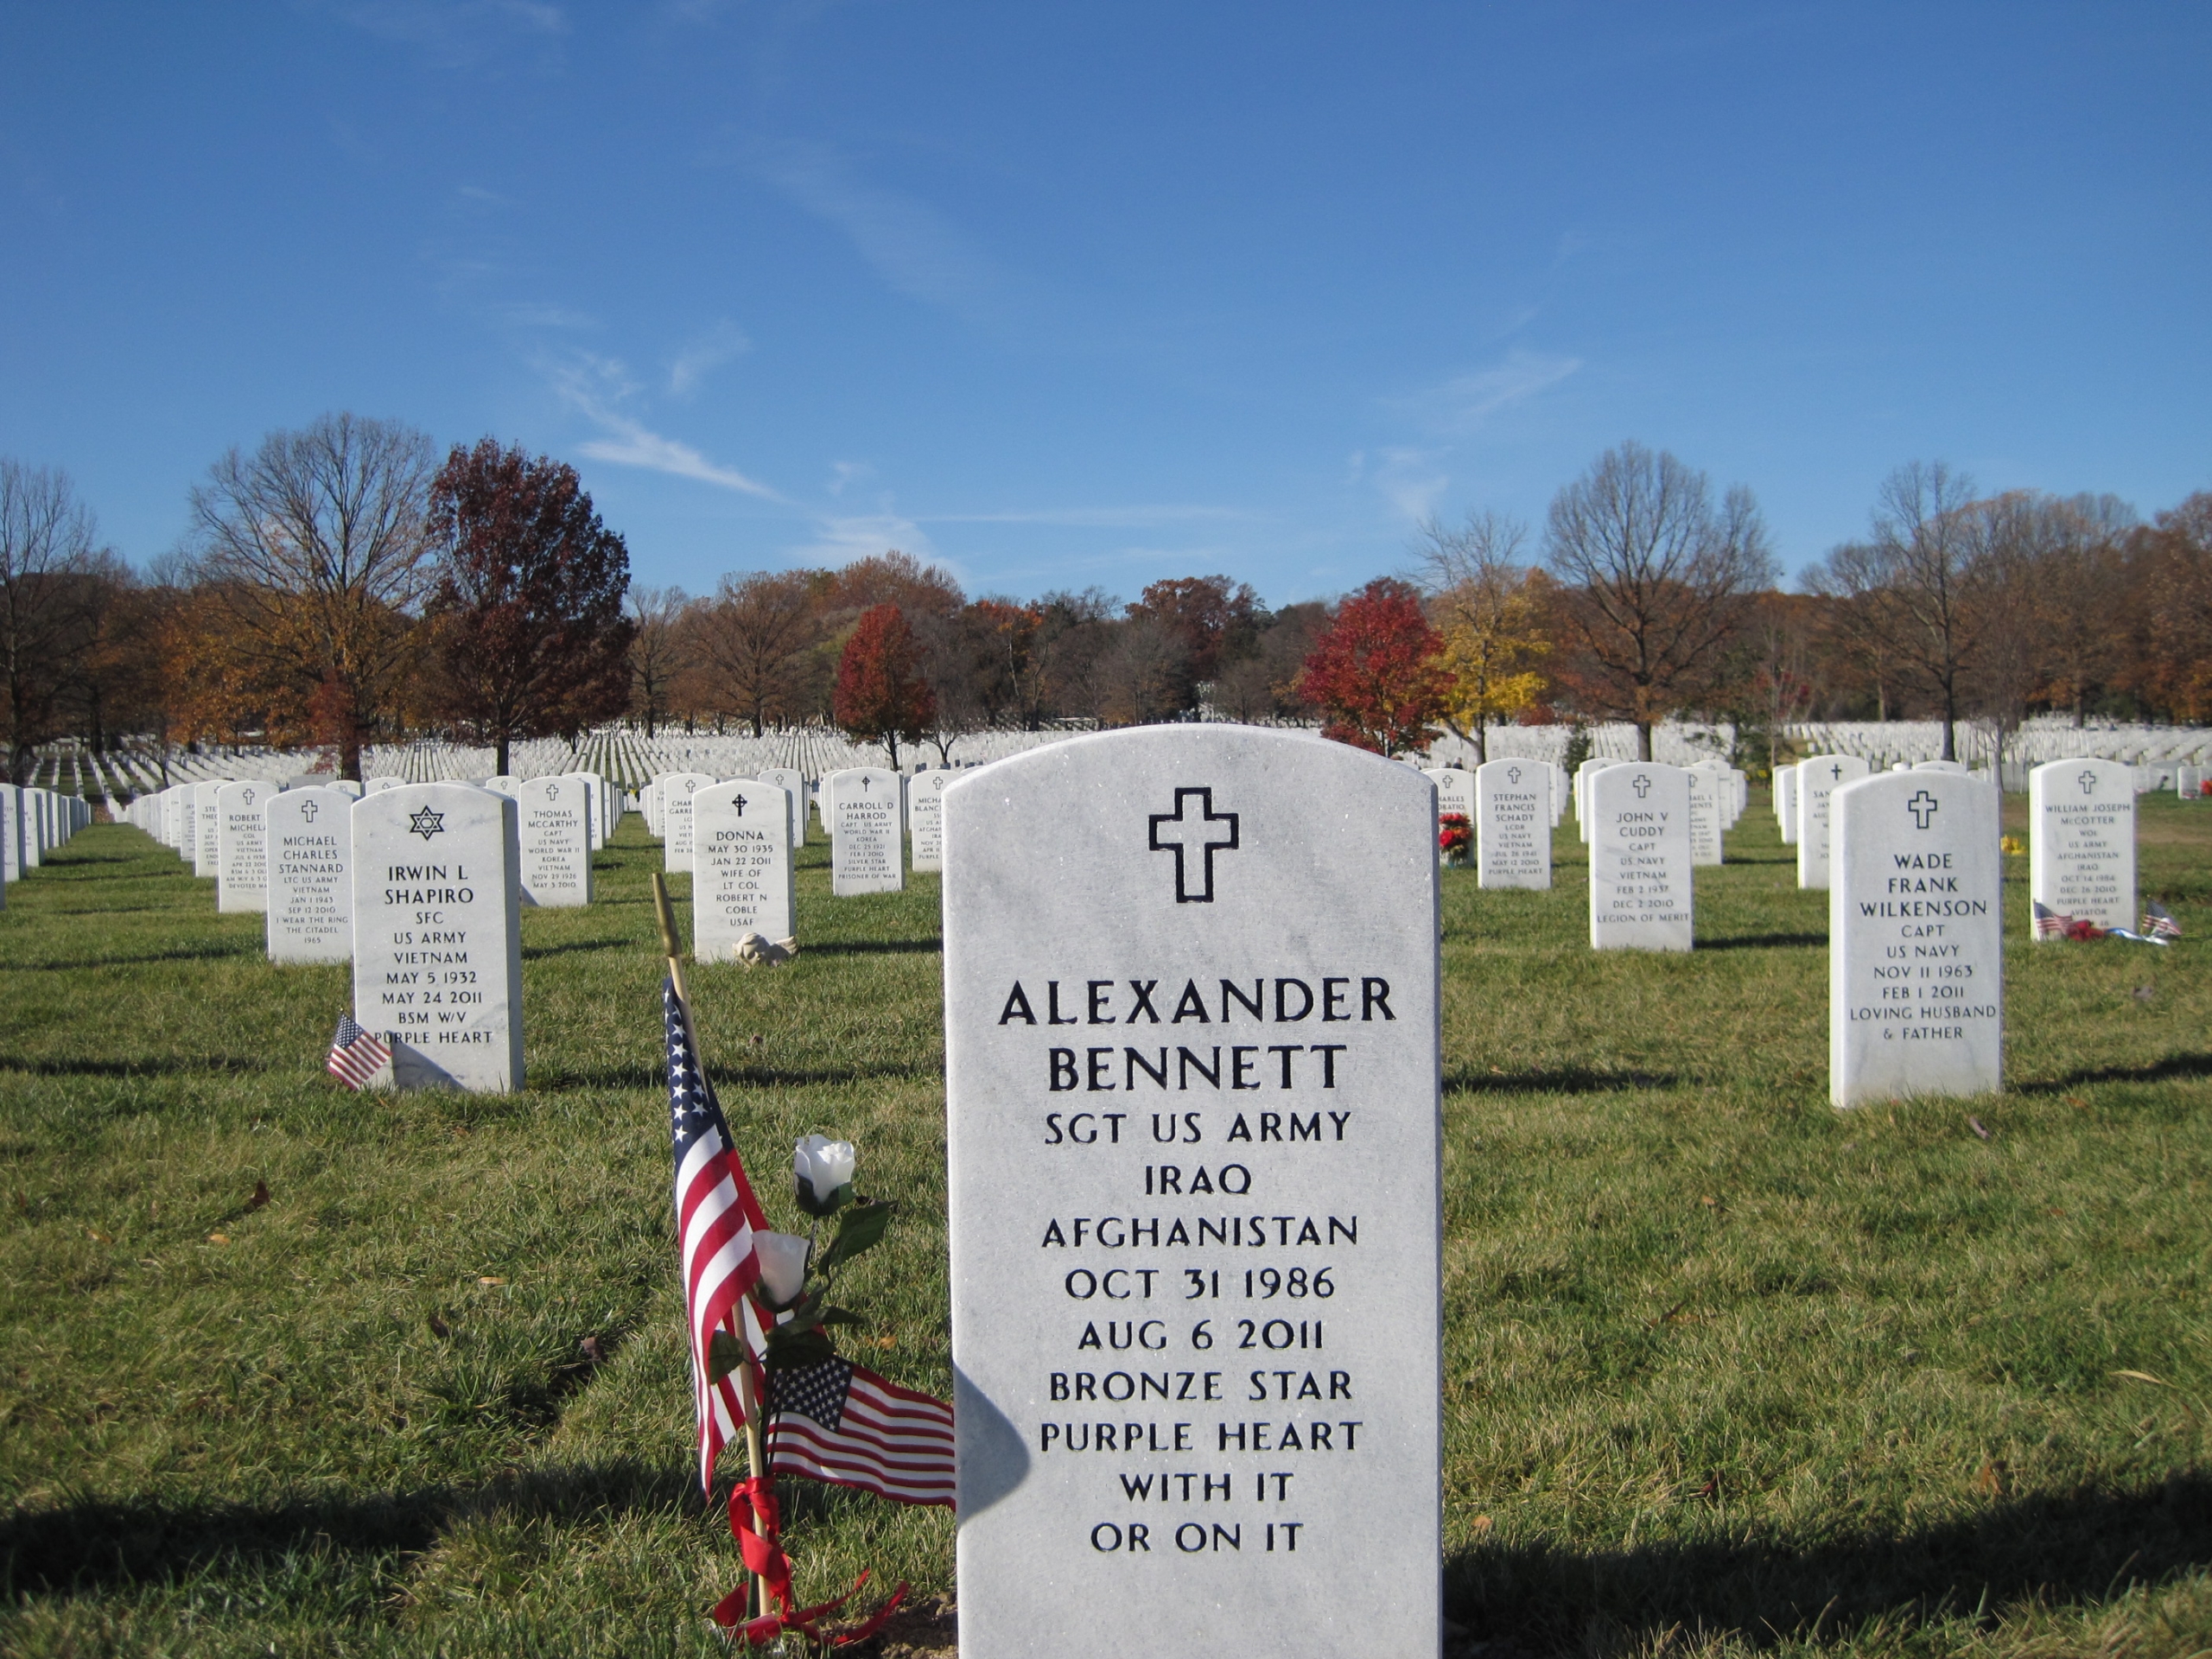 alexander-bennett-gravesite-photo-by-eileen-horan-november-2011-003